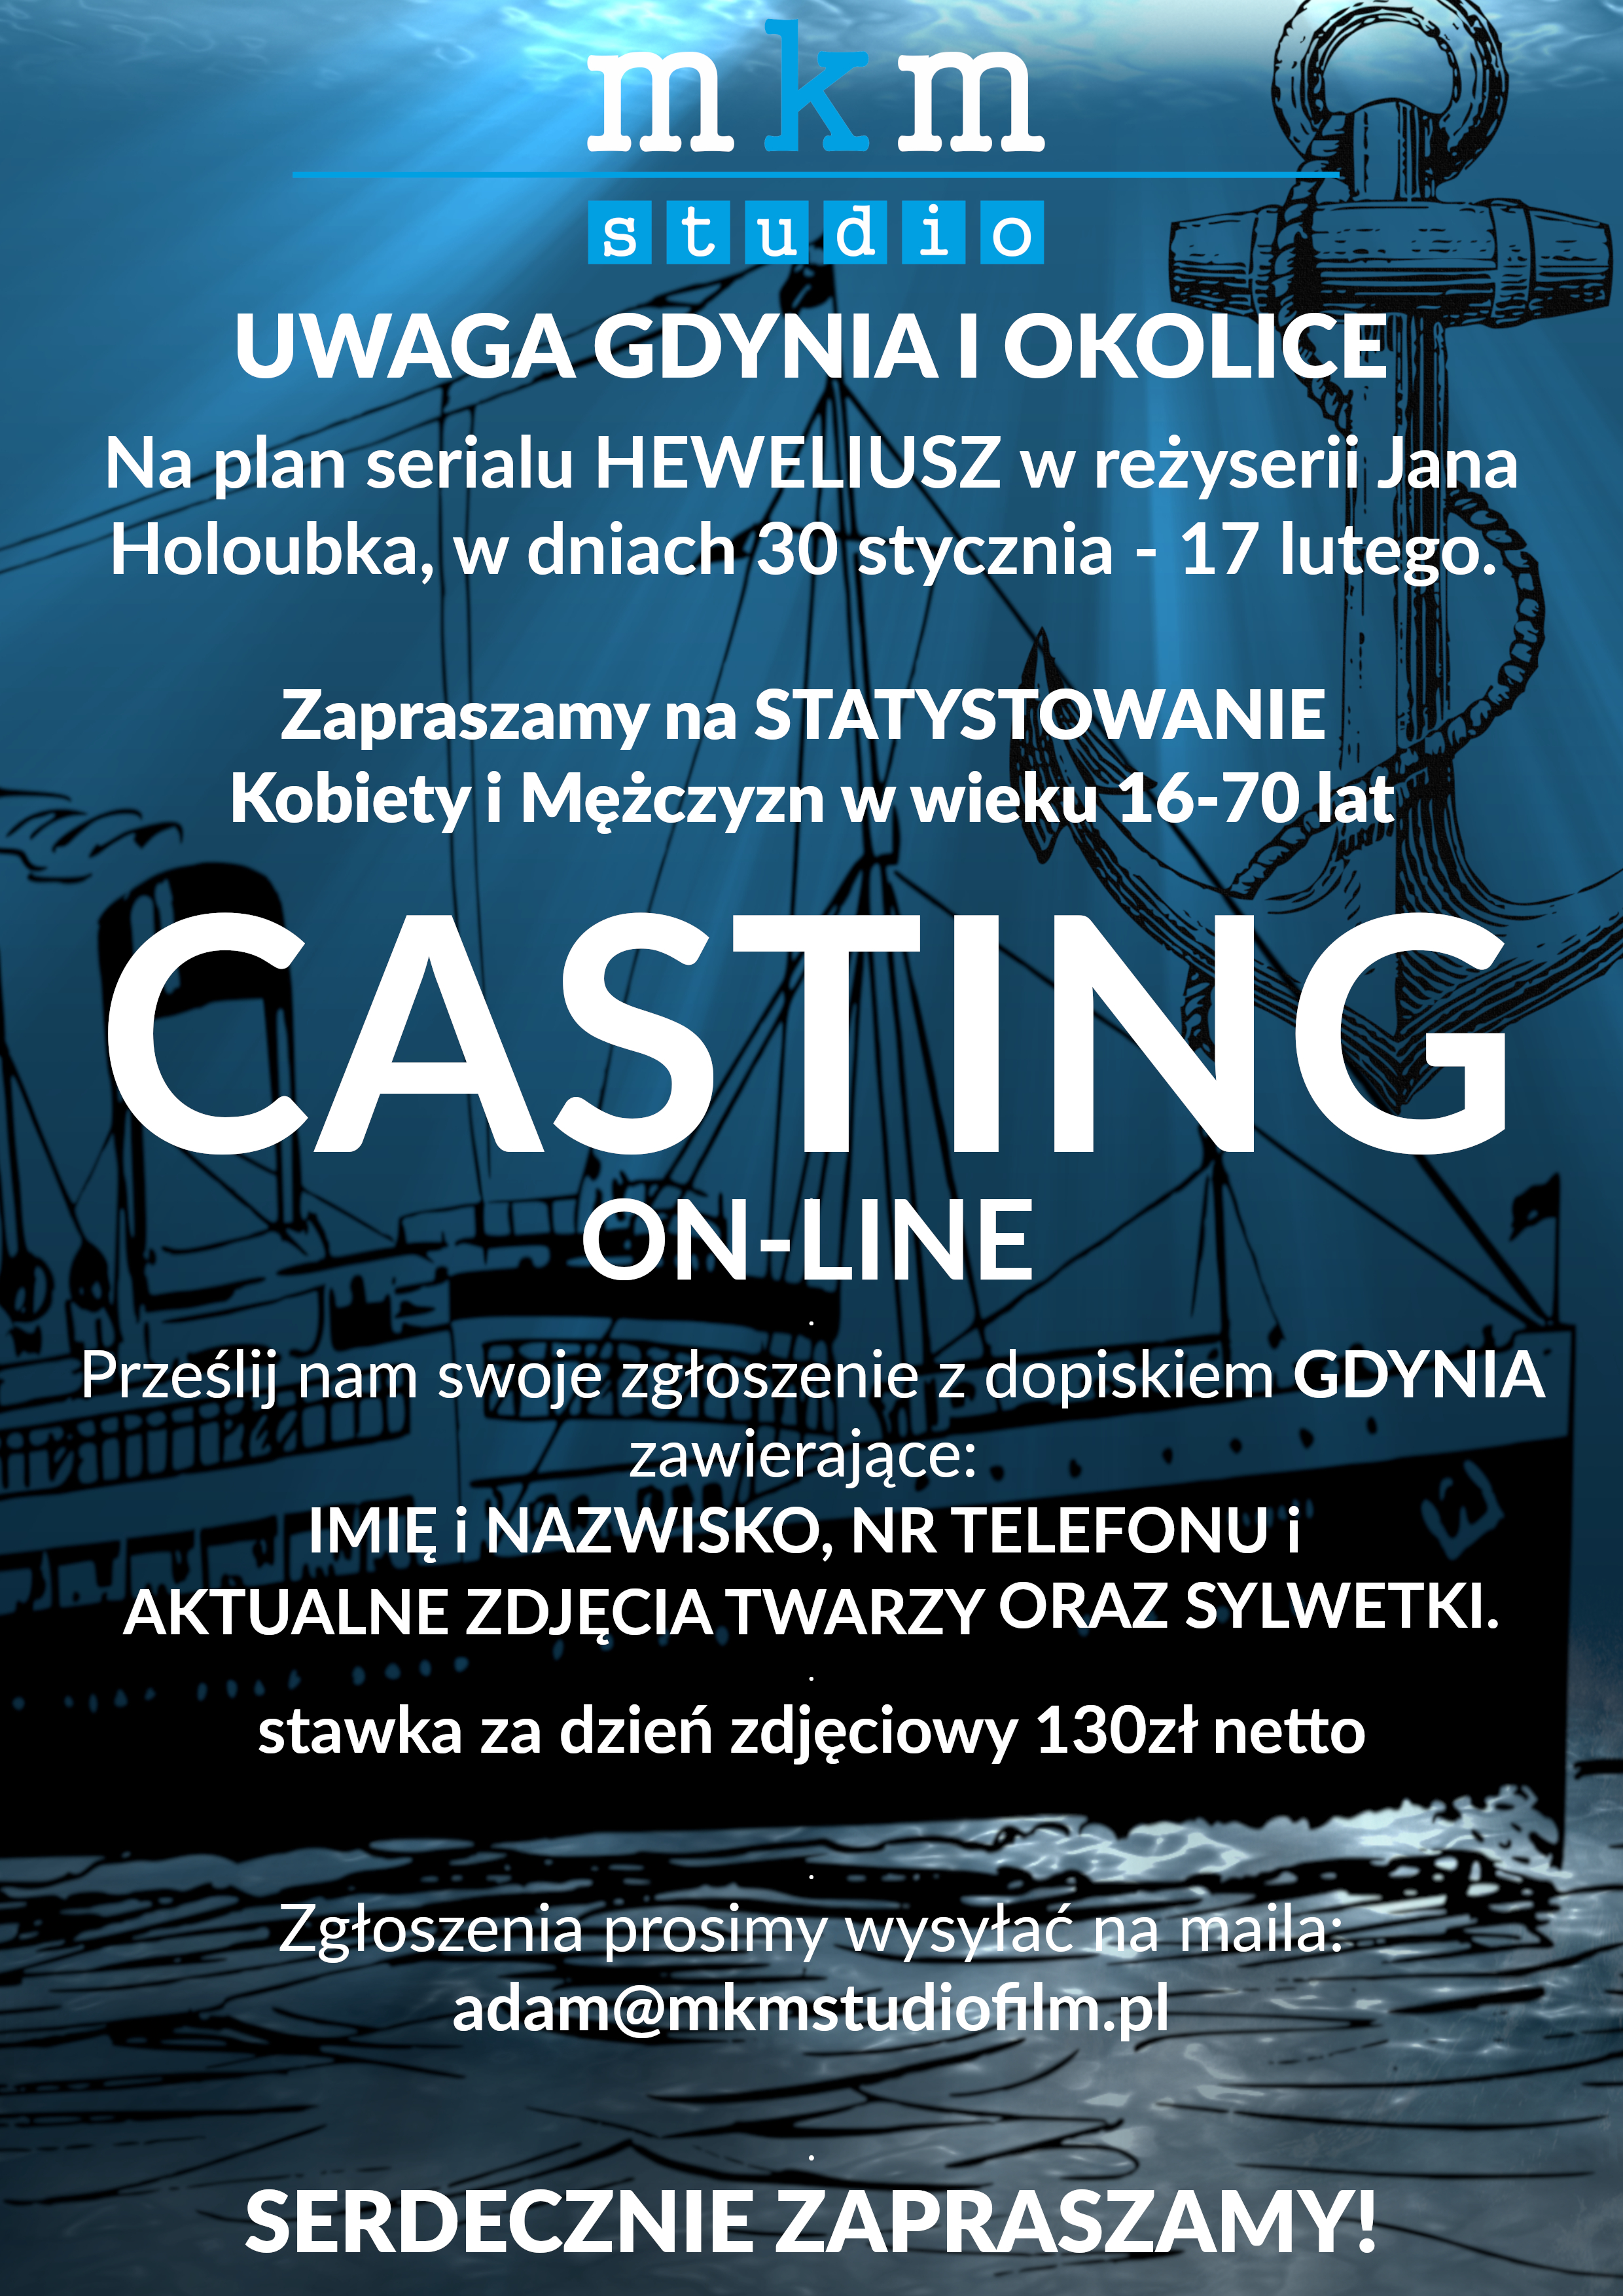 Plakat z informacjami o castingu online w Gdyni